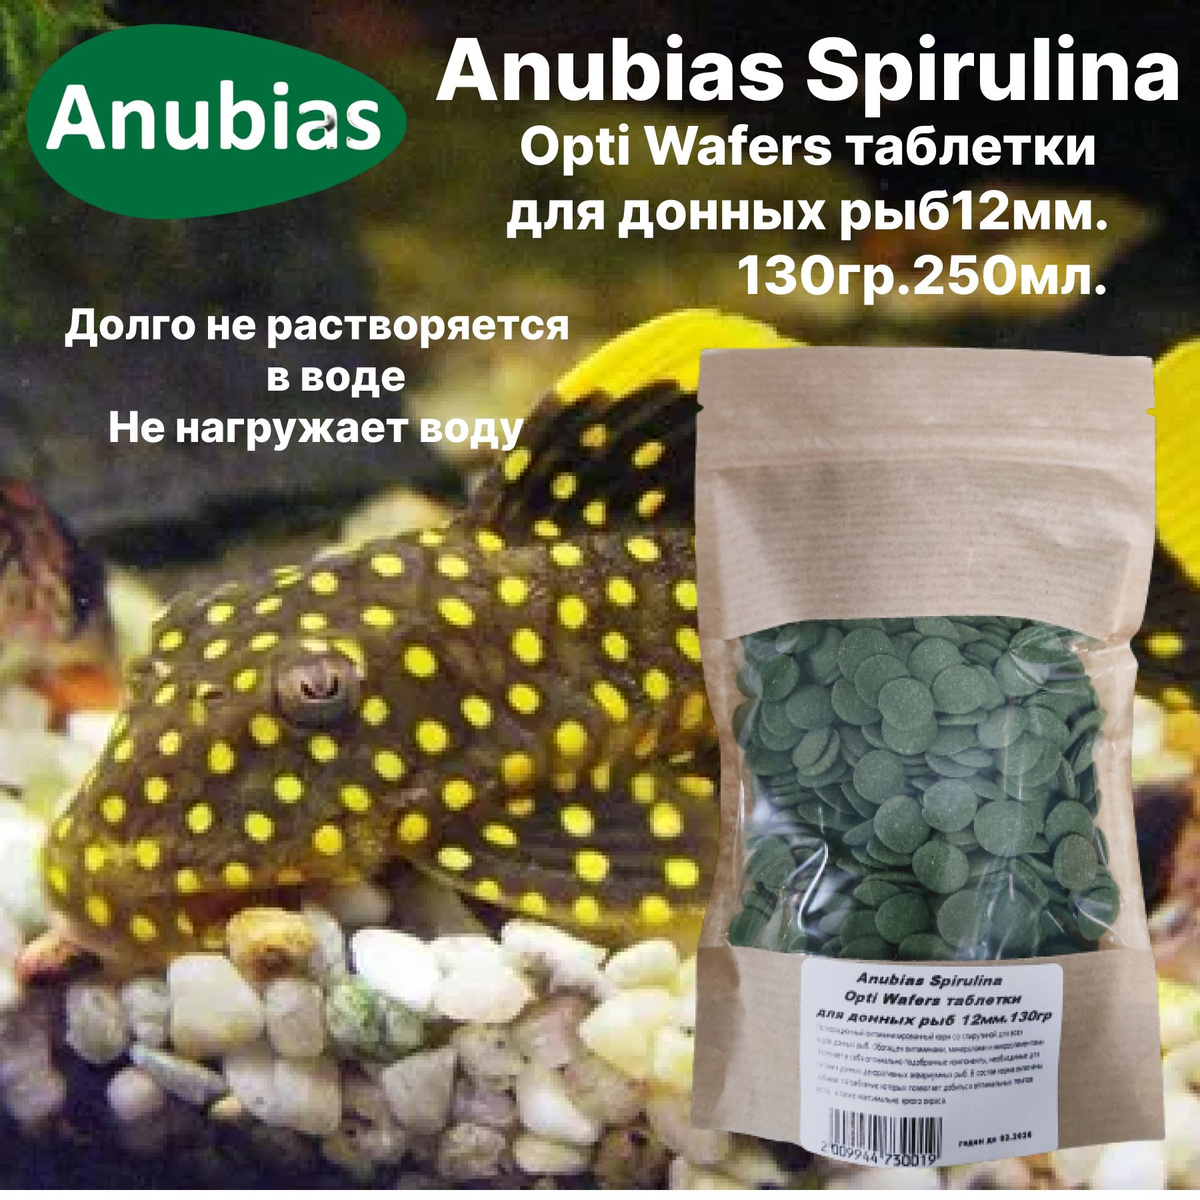 Anubias Spirulina Opti Wafers таблетки для донных рыб 12мм.130гр.250мл.Основной полноценный, 100% растительный, корм сухой, тонущий для донных рыб.